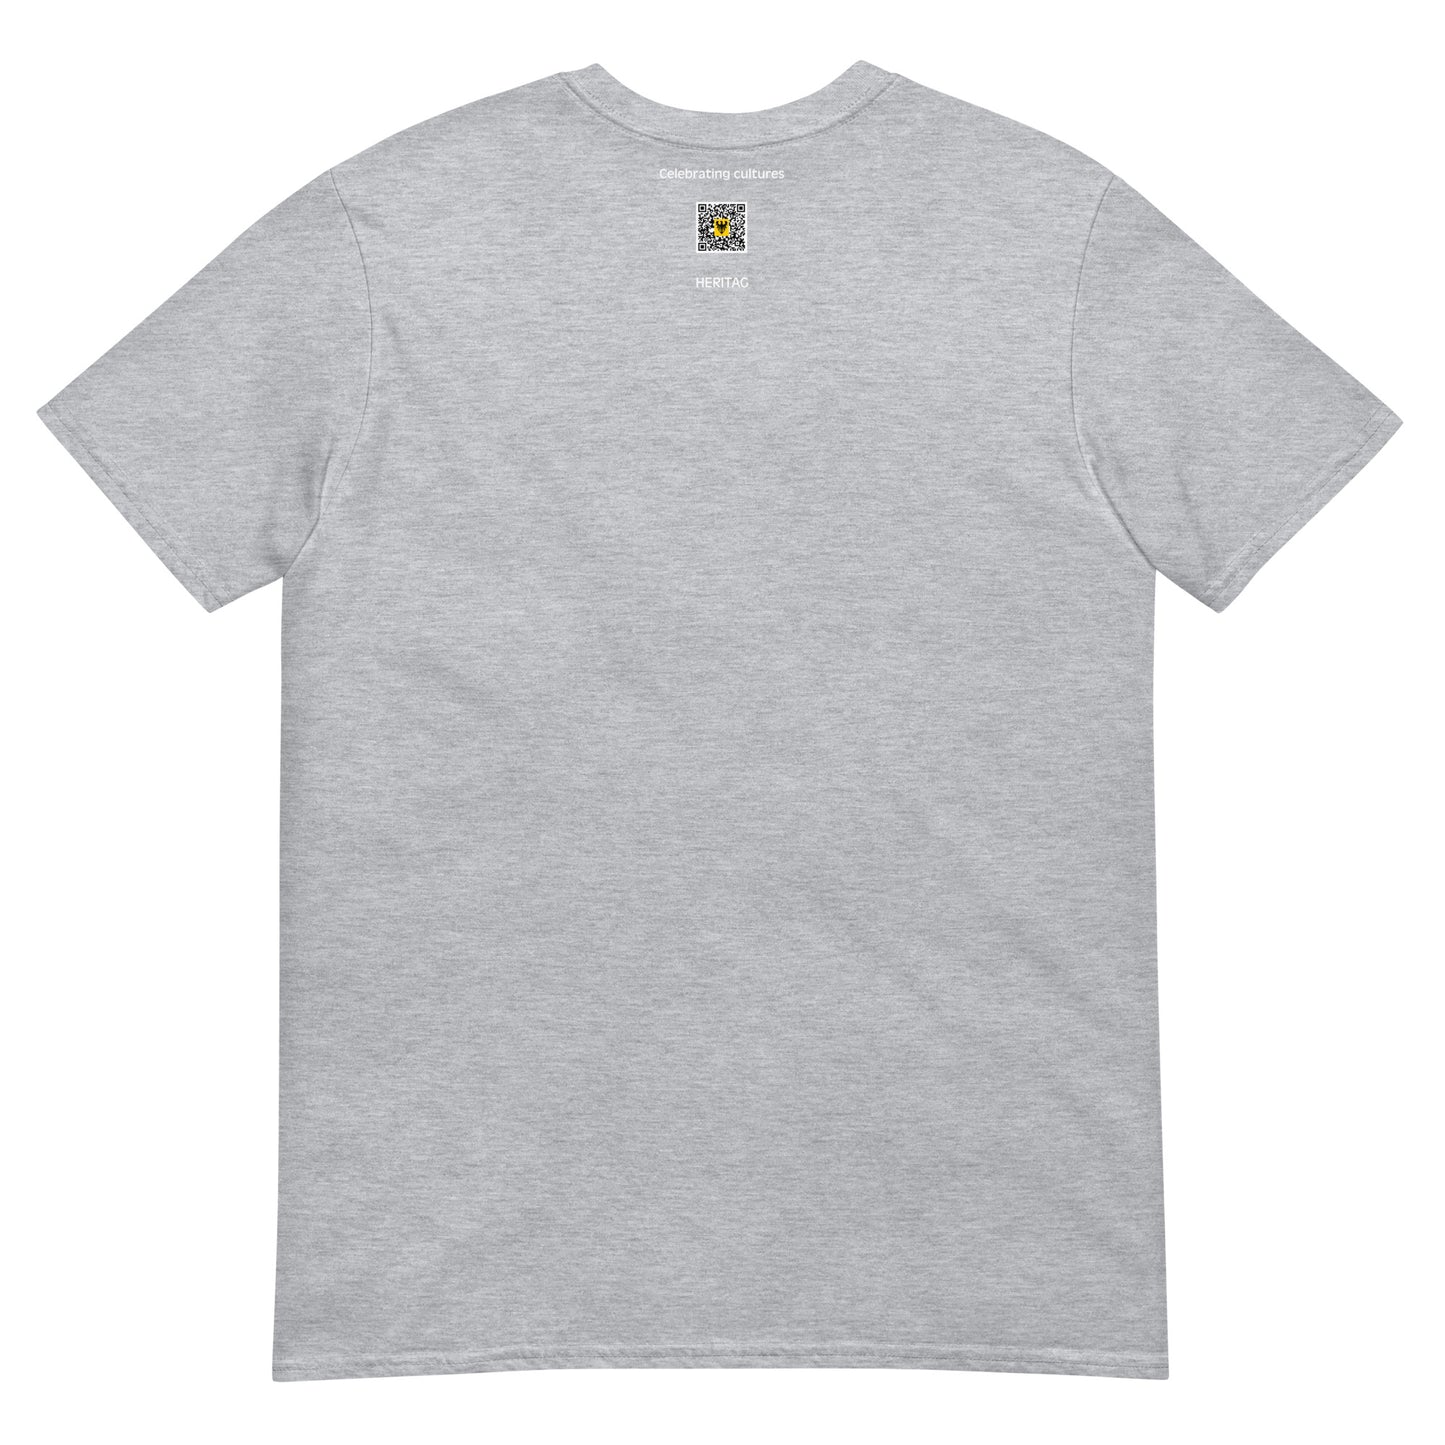 Switzerland - Holy Roman Empire (800-1300) | Historical Flag Short-Sleeve Unisex T-Shirt